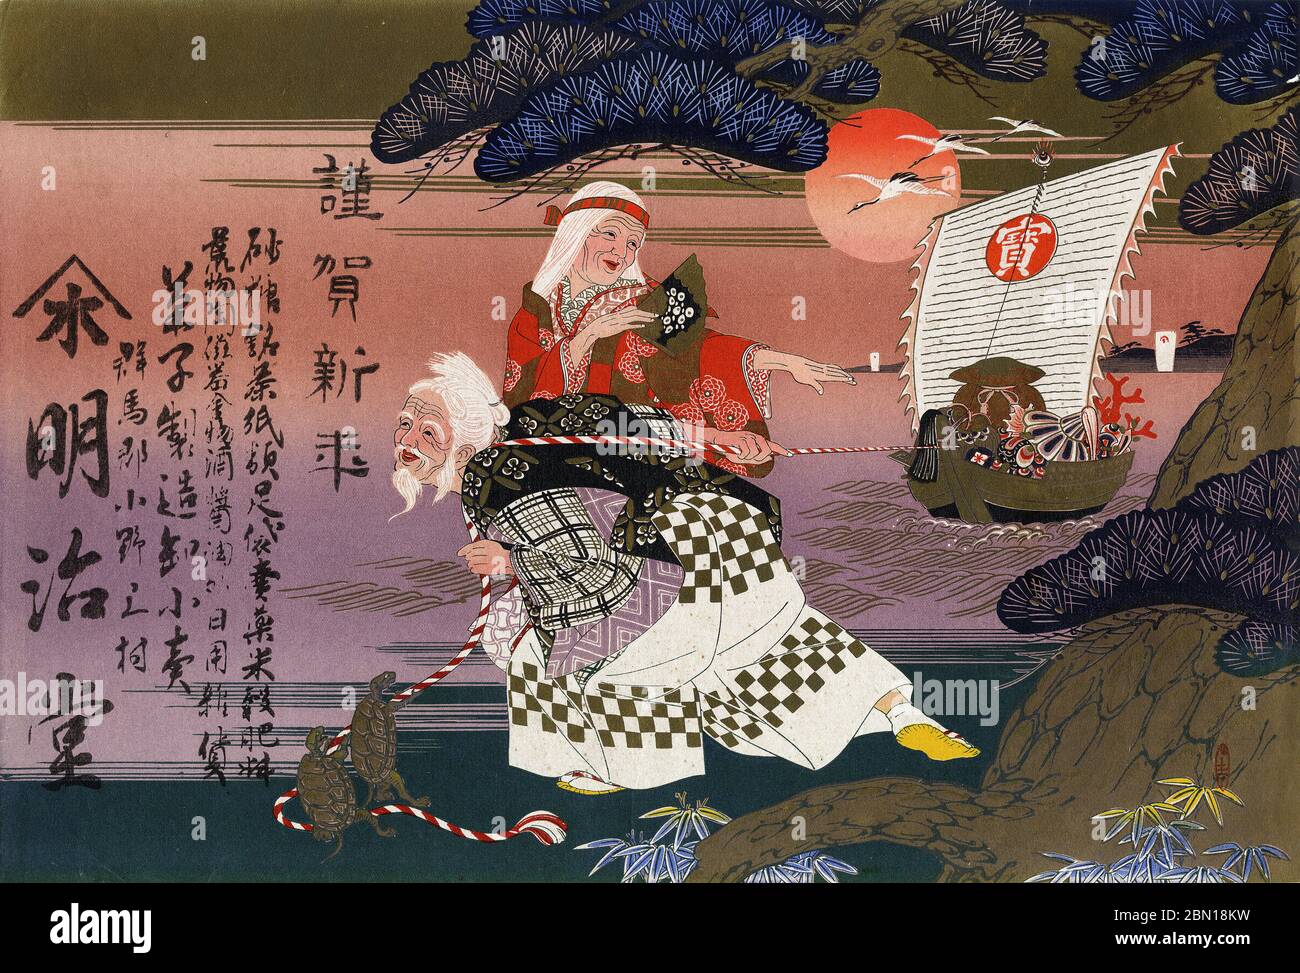 [ 1900er Japan - Old man Pulling Boat ] - Hikifuda (引札), ein Druck, der von lokalen Geschäften als Werbeflyer verwendet wird. Sie waren von den 1800er bis in die 1920er Jahre populär. Dieser Druck zeigt einen alten Mann, der ein Schatzboot mit Seil zieht. Das Schreiben gibt Neujahrsgrüße und wirbt für den Meijido (明治堂)-Laden im Dorf Onomae, Präfektur Gunma (群馬県群馬郡小野上村). 20. Jahrhundert Vintage Werbung Flyer. Stockfoto